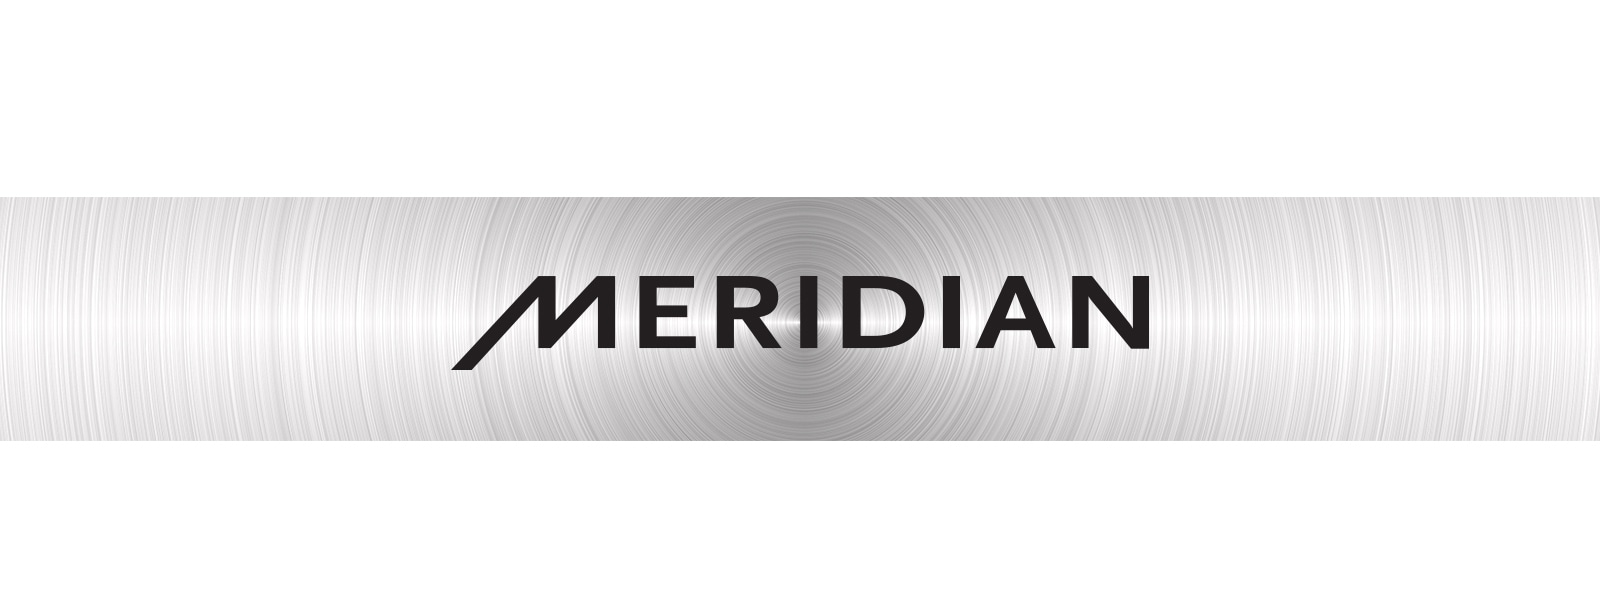 Εικόνα του λογότυπου "Meridian"